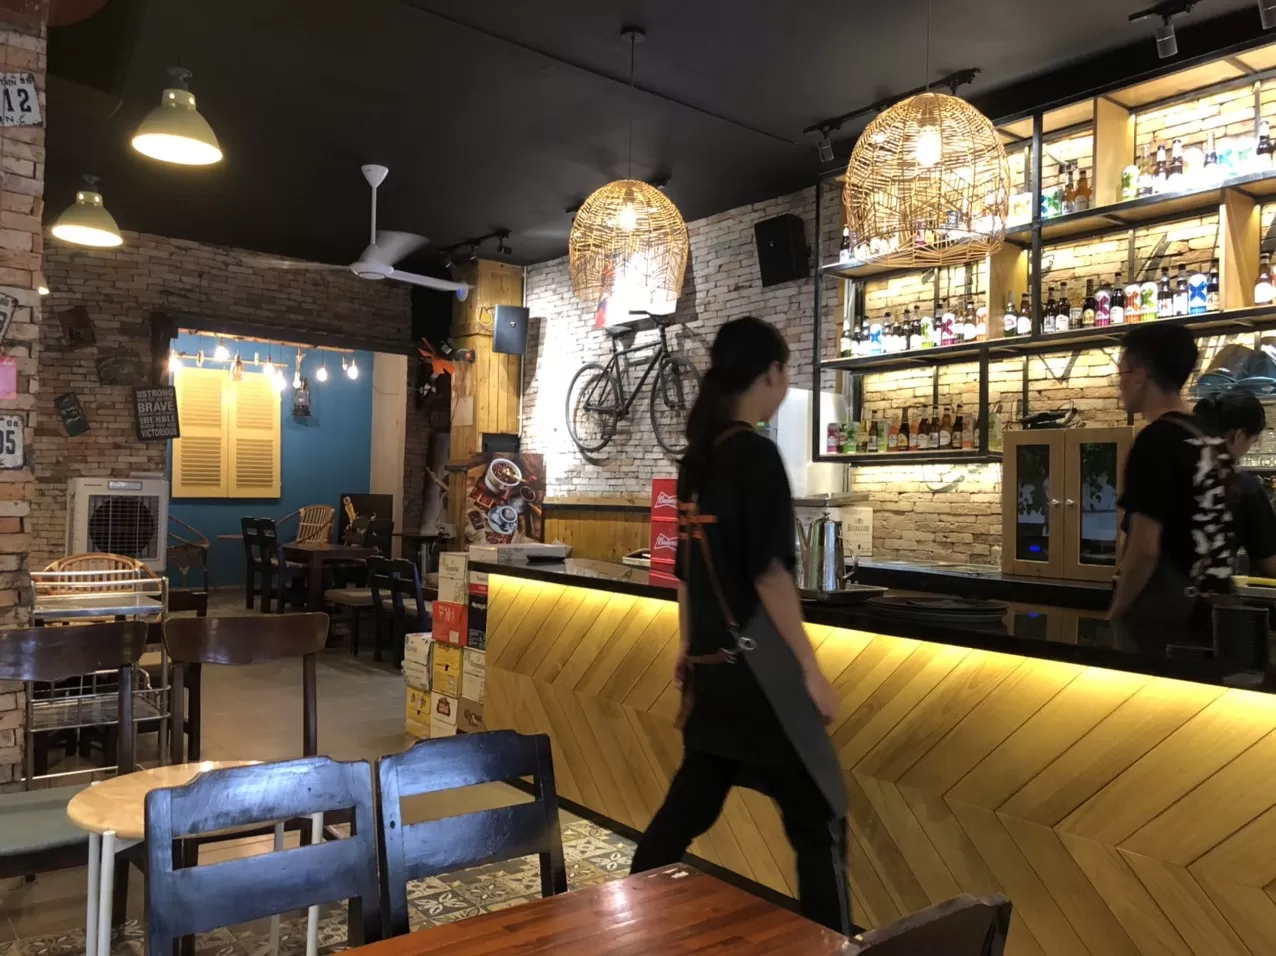 Thi công quán cafe The Wall Coffee